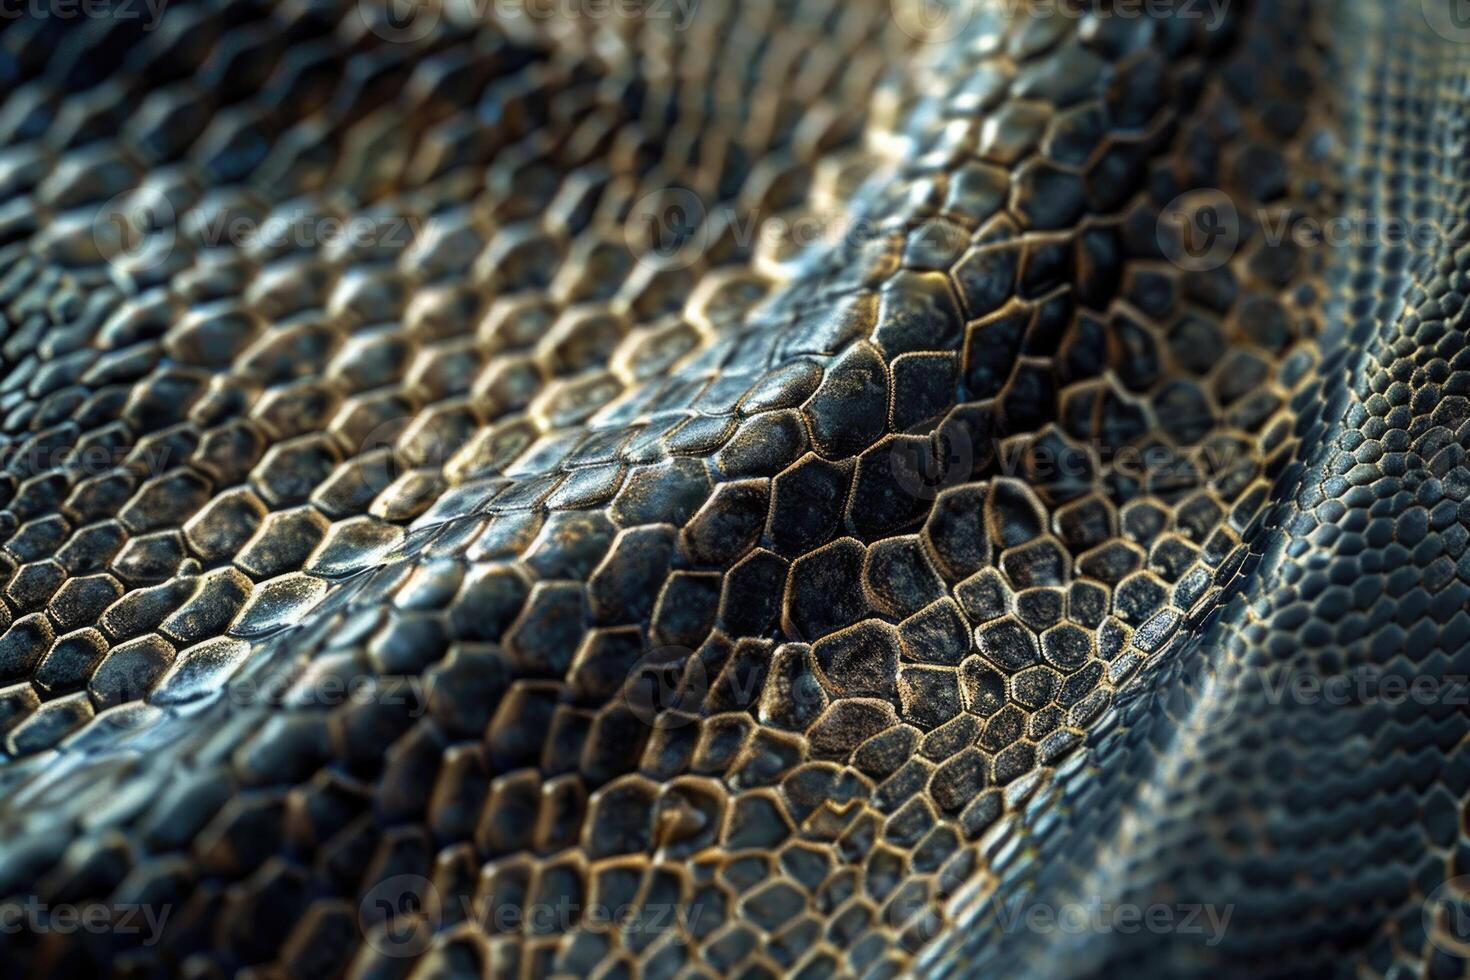 Snake skin reptile photo